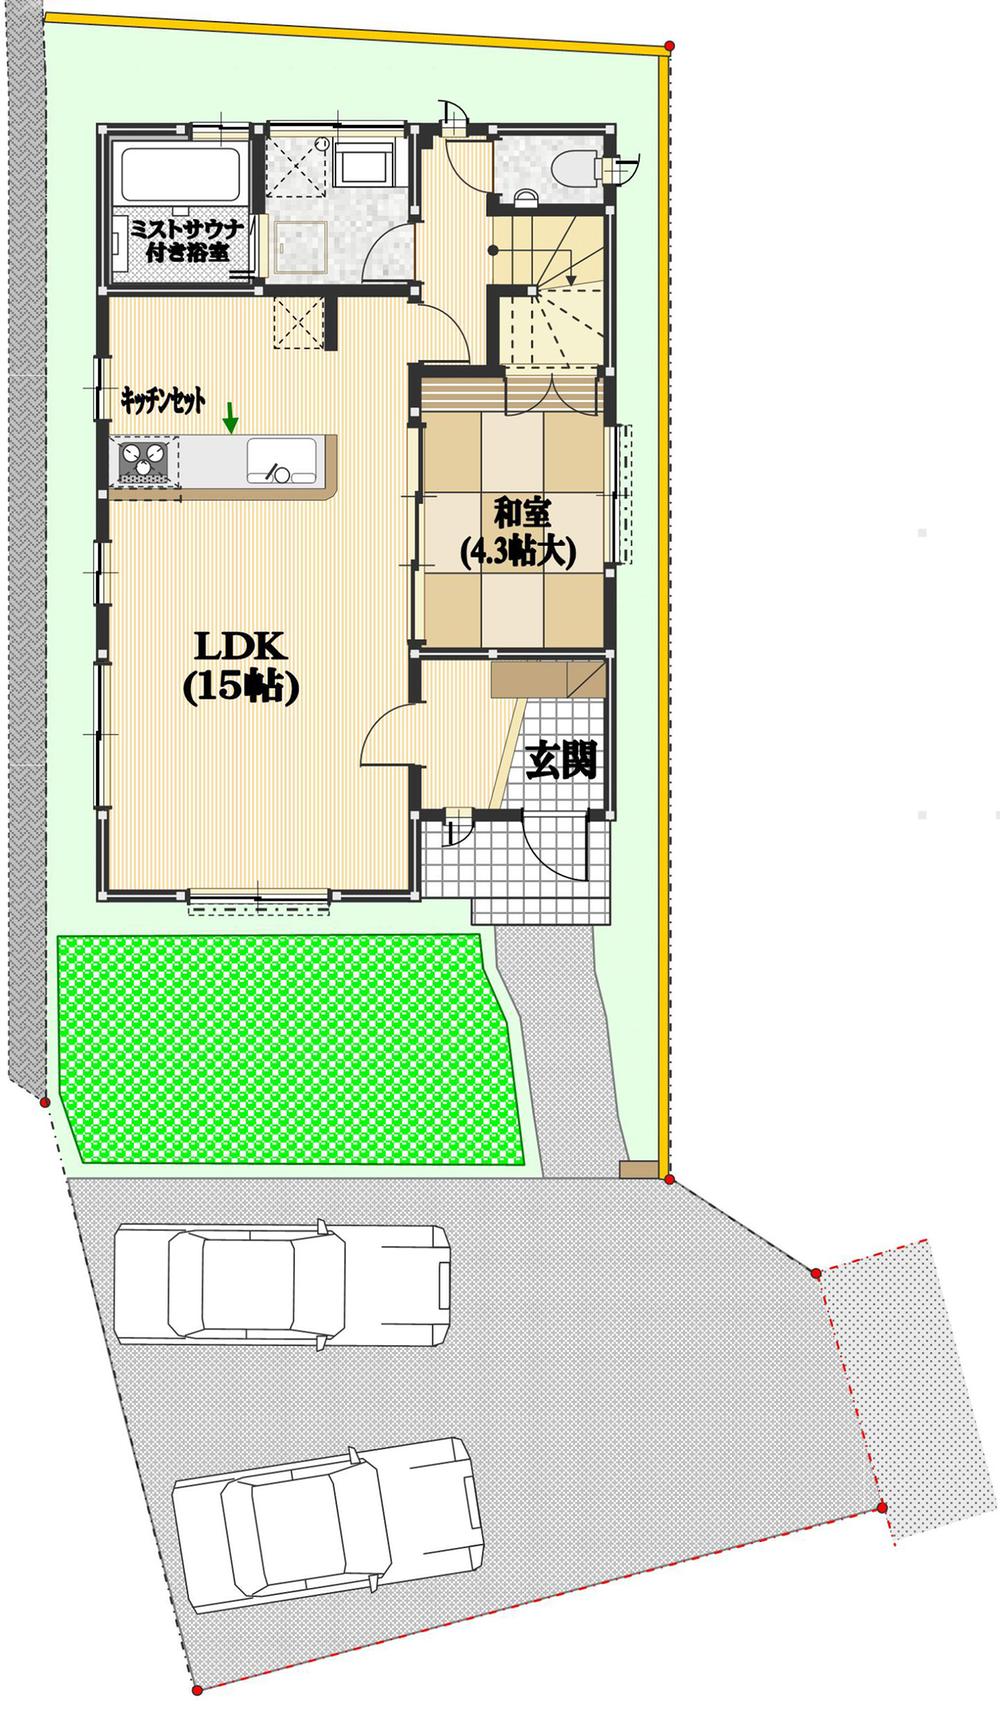 Floor plan. 37,300,000 yen, 4LDK, Land area 134.41 sq m , Building area 94.81 sq m 1 floor: the bathroom mist sauna, With dryer,